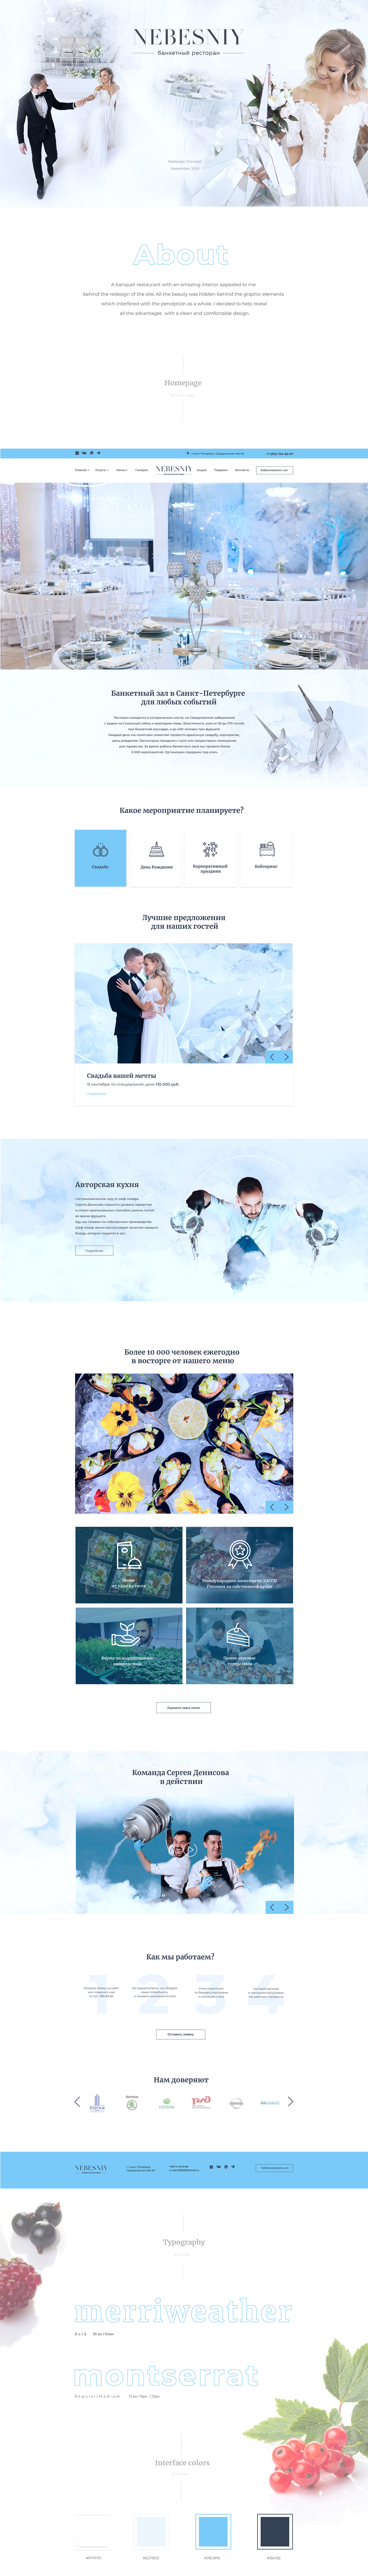 сайт ресторана restaurant wedding menu меню Webdesign UI ux